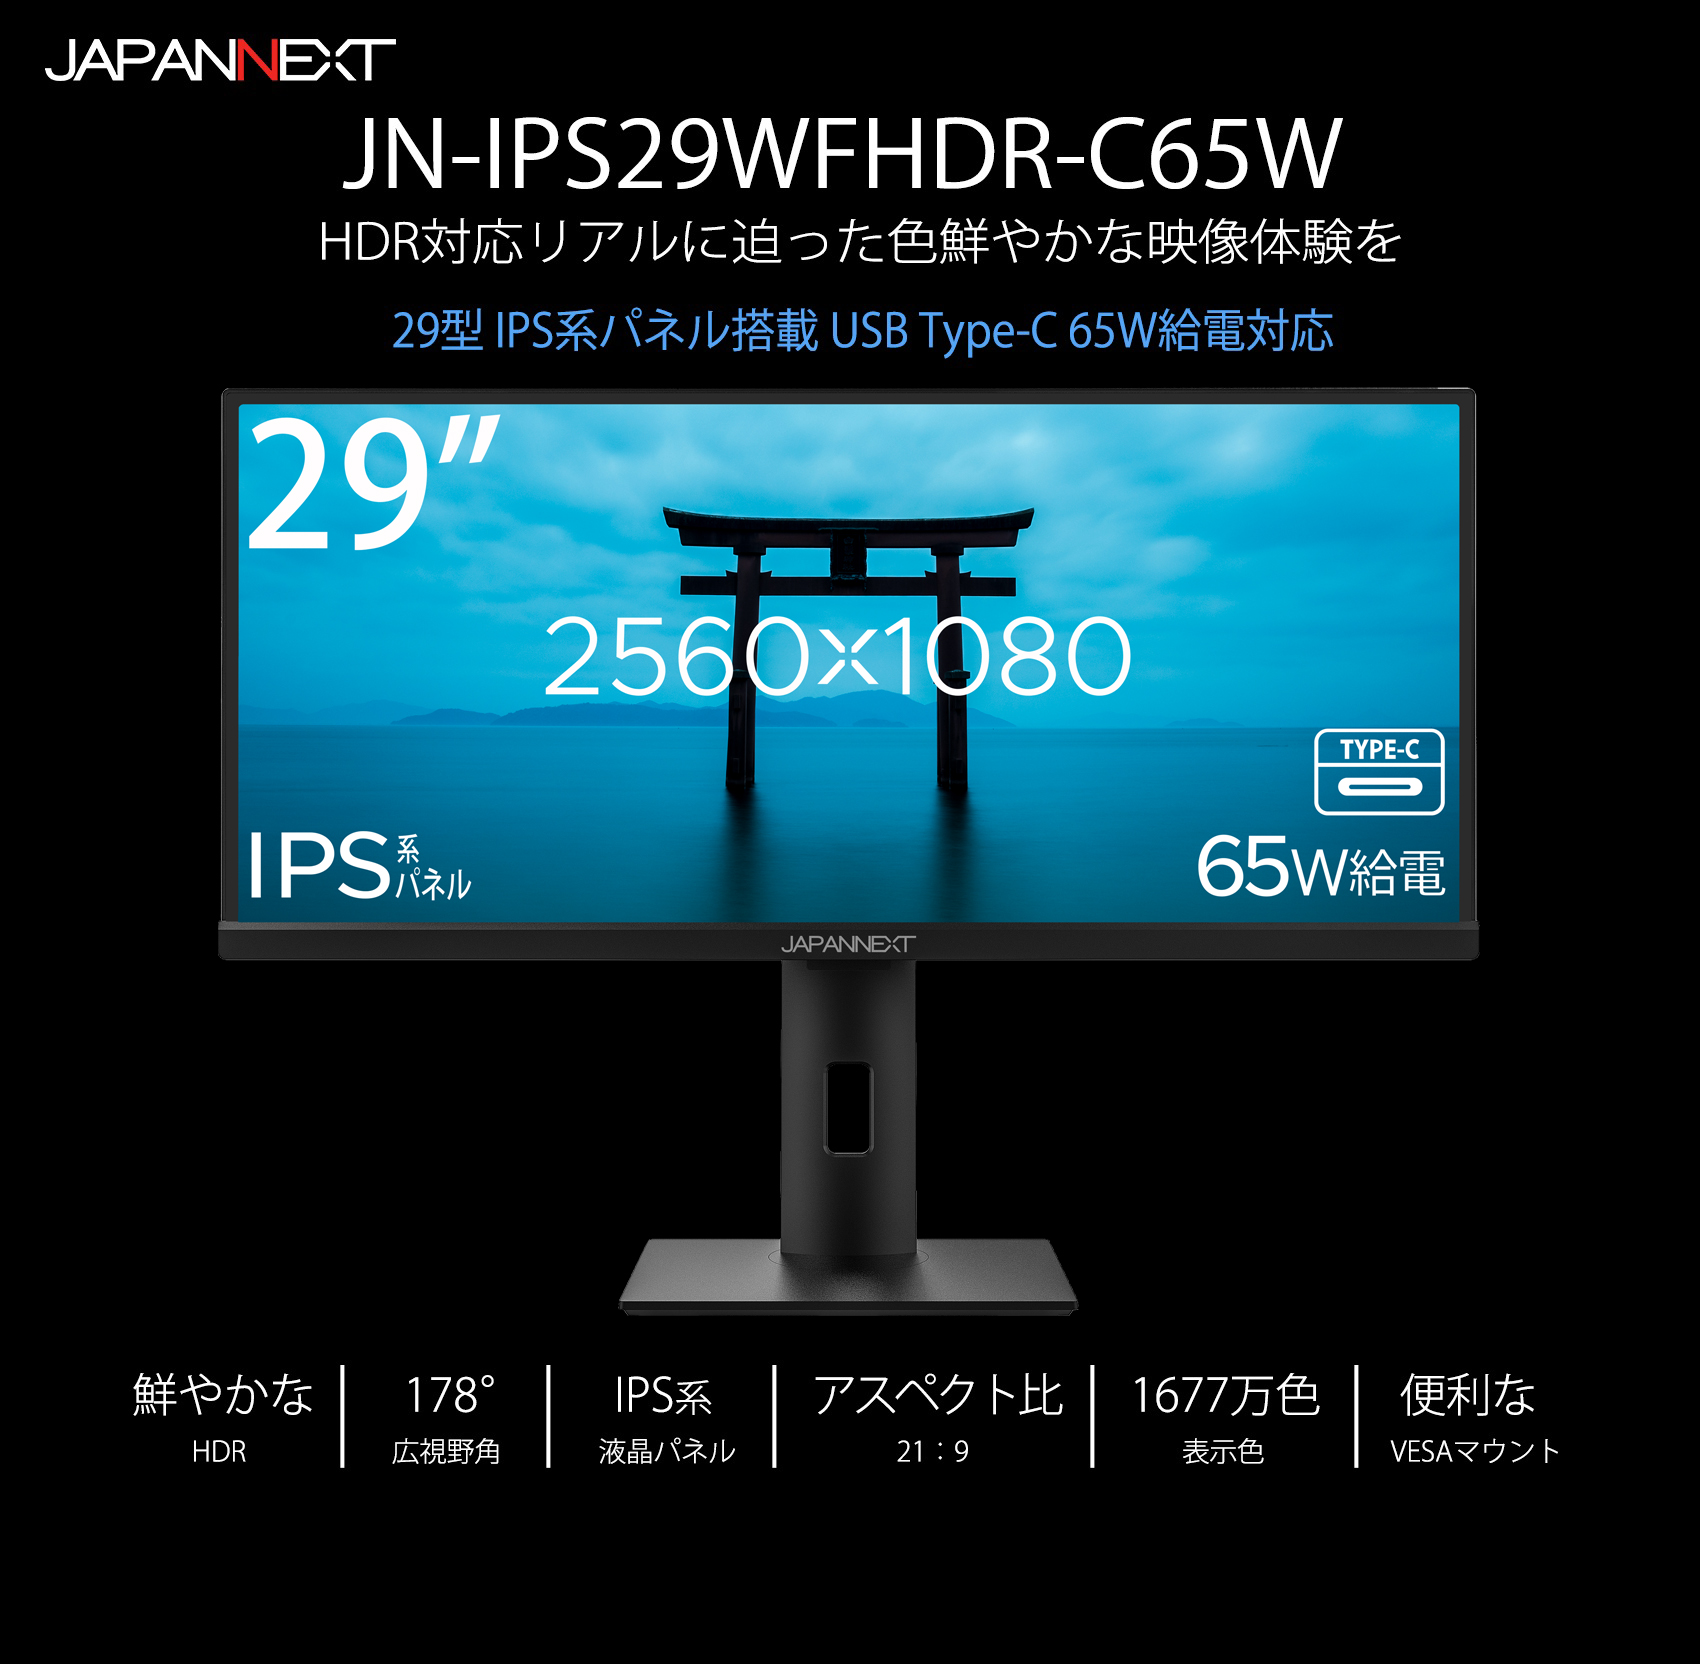 JAPANNEXT JN-IPS29WFHDR-C65W (29型ワイドFHD液晶モニター, IPSパネル